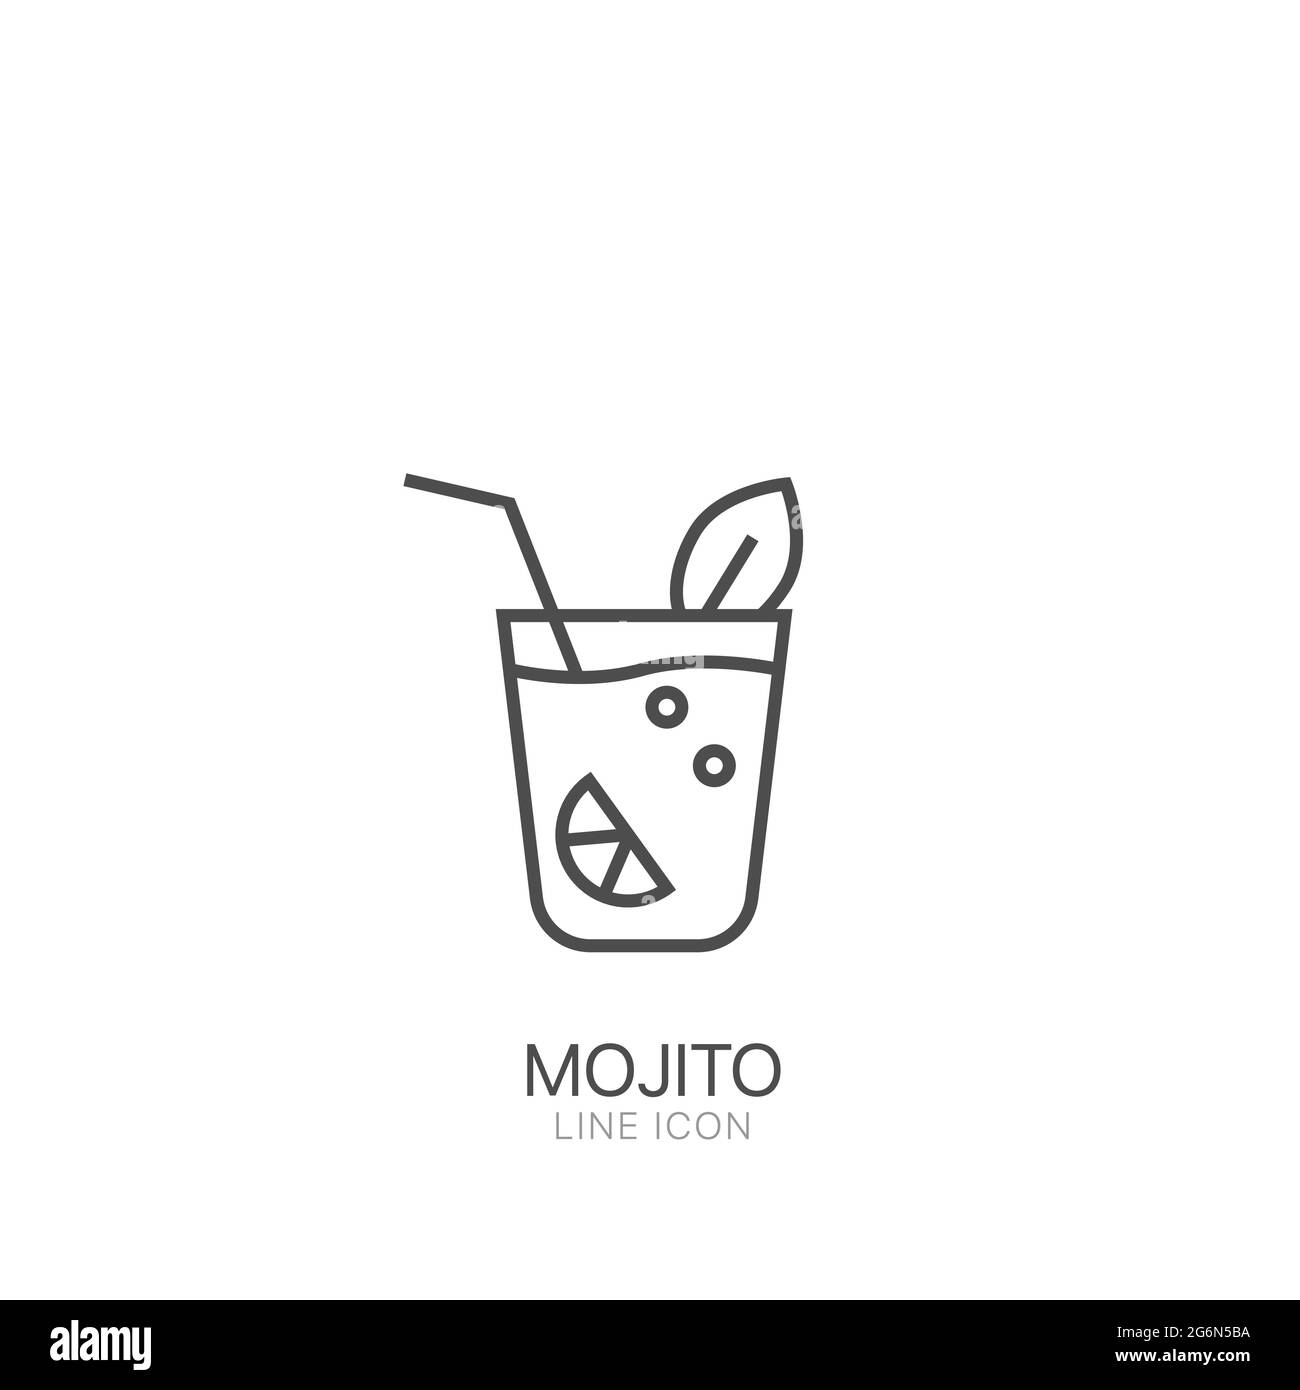 Mojito-Vektorsymbol. Bearbeitbarer Strich Schwarzes Mojito-Symbol für dünne Linie Stock Vektor